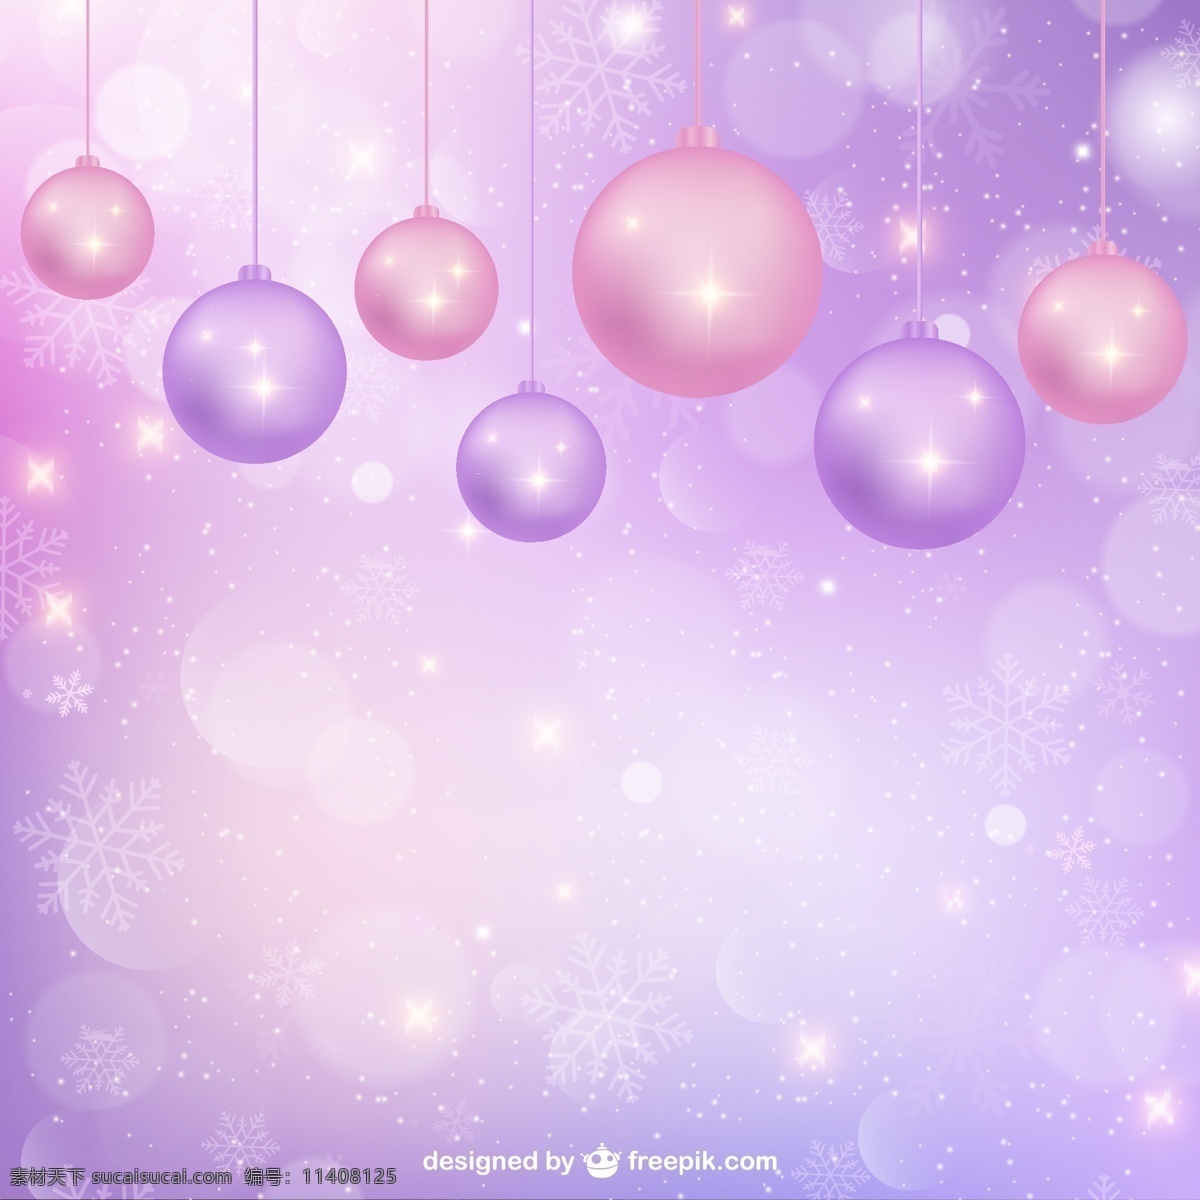 紫色 背景 圣诞 装饰品 饰品 装饰 圣诞球 玩具 小玩意